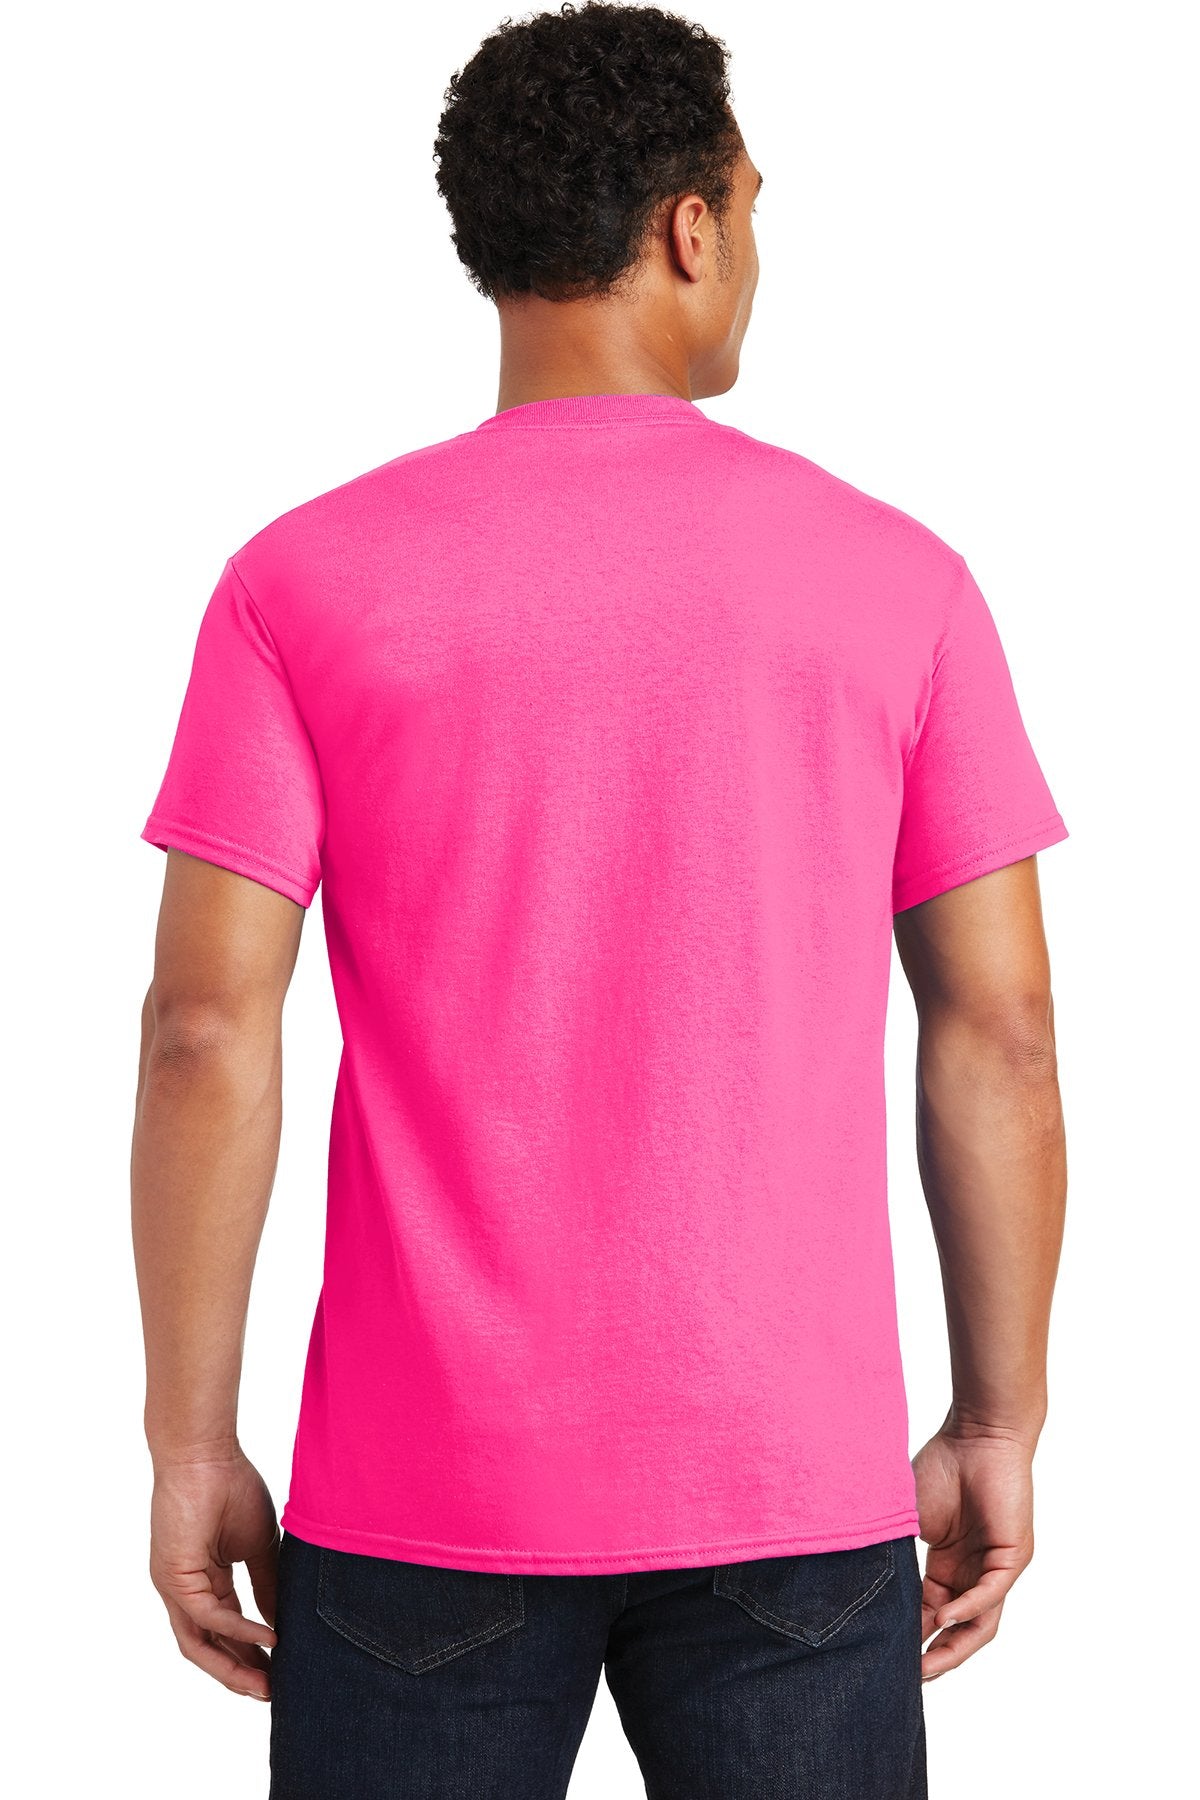 gildan ultra cotton t shirt 2000 safety pink